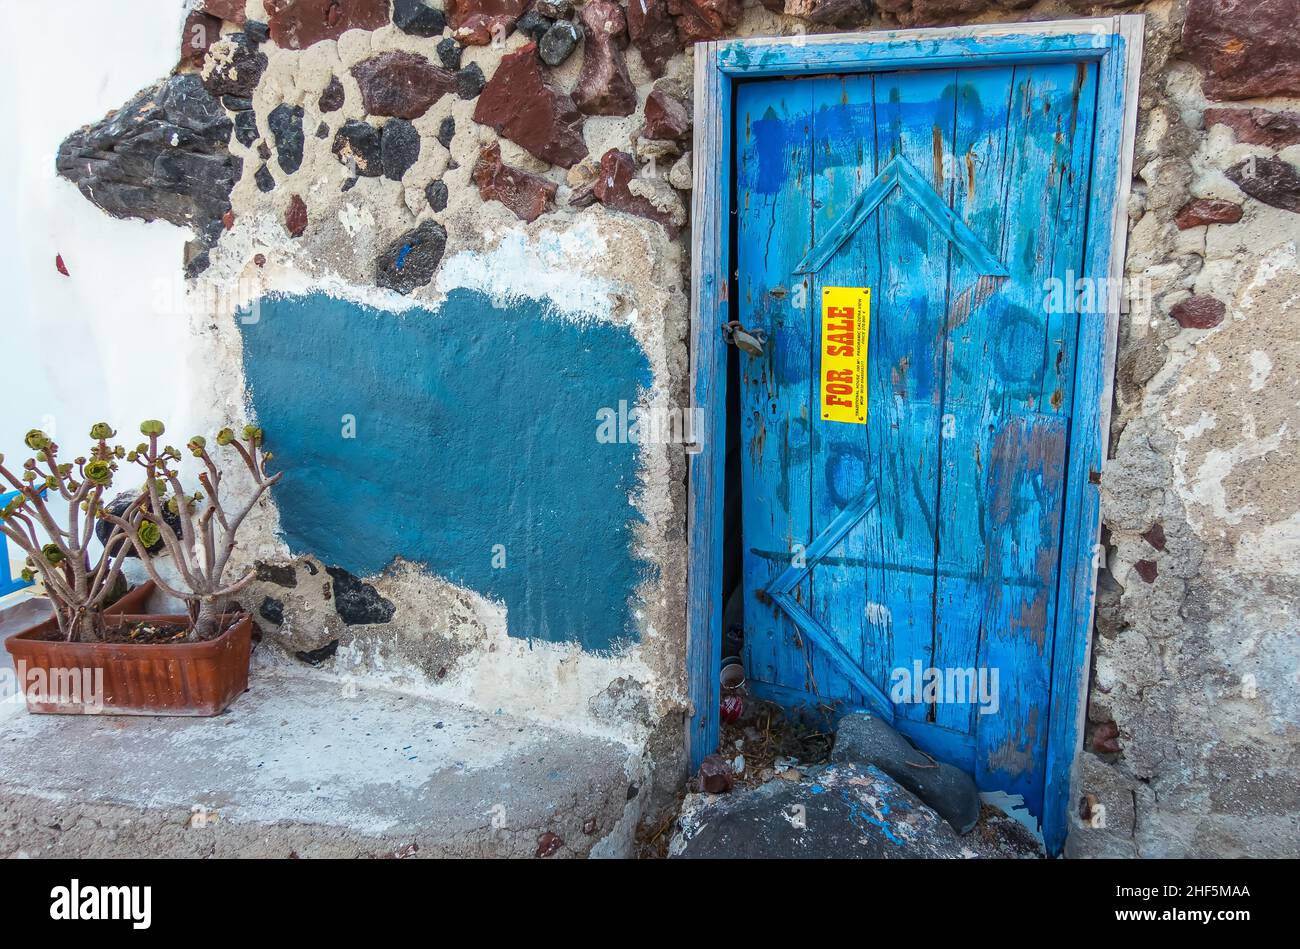 Marode Immobilie mit typische blauer Holztür wird auf einer griechischen Insel zum Verkauf angeboten Foto de stock